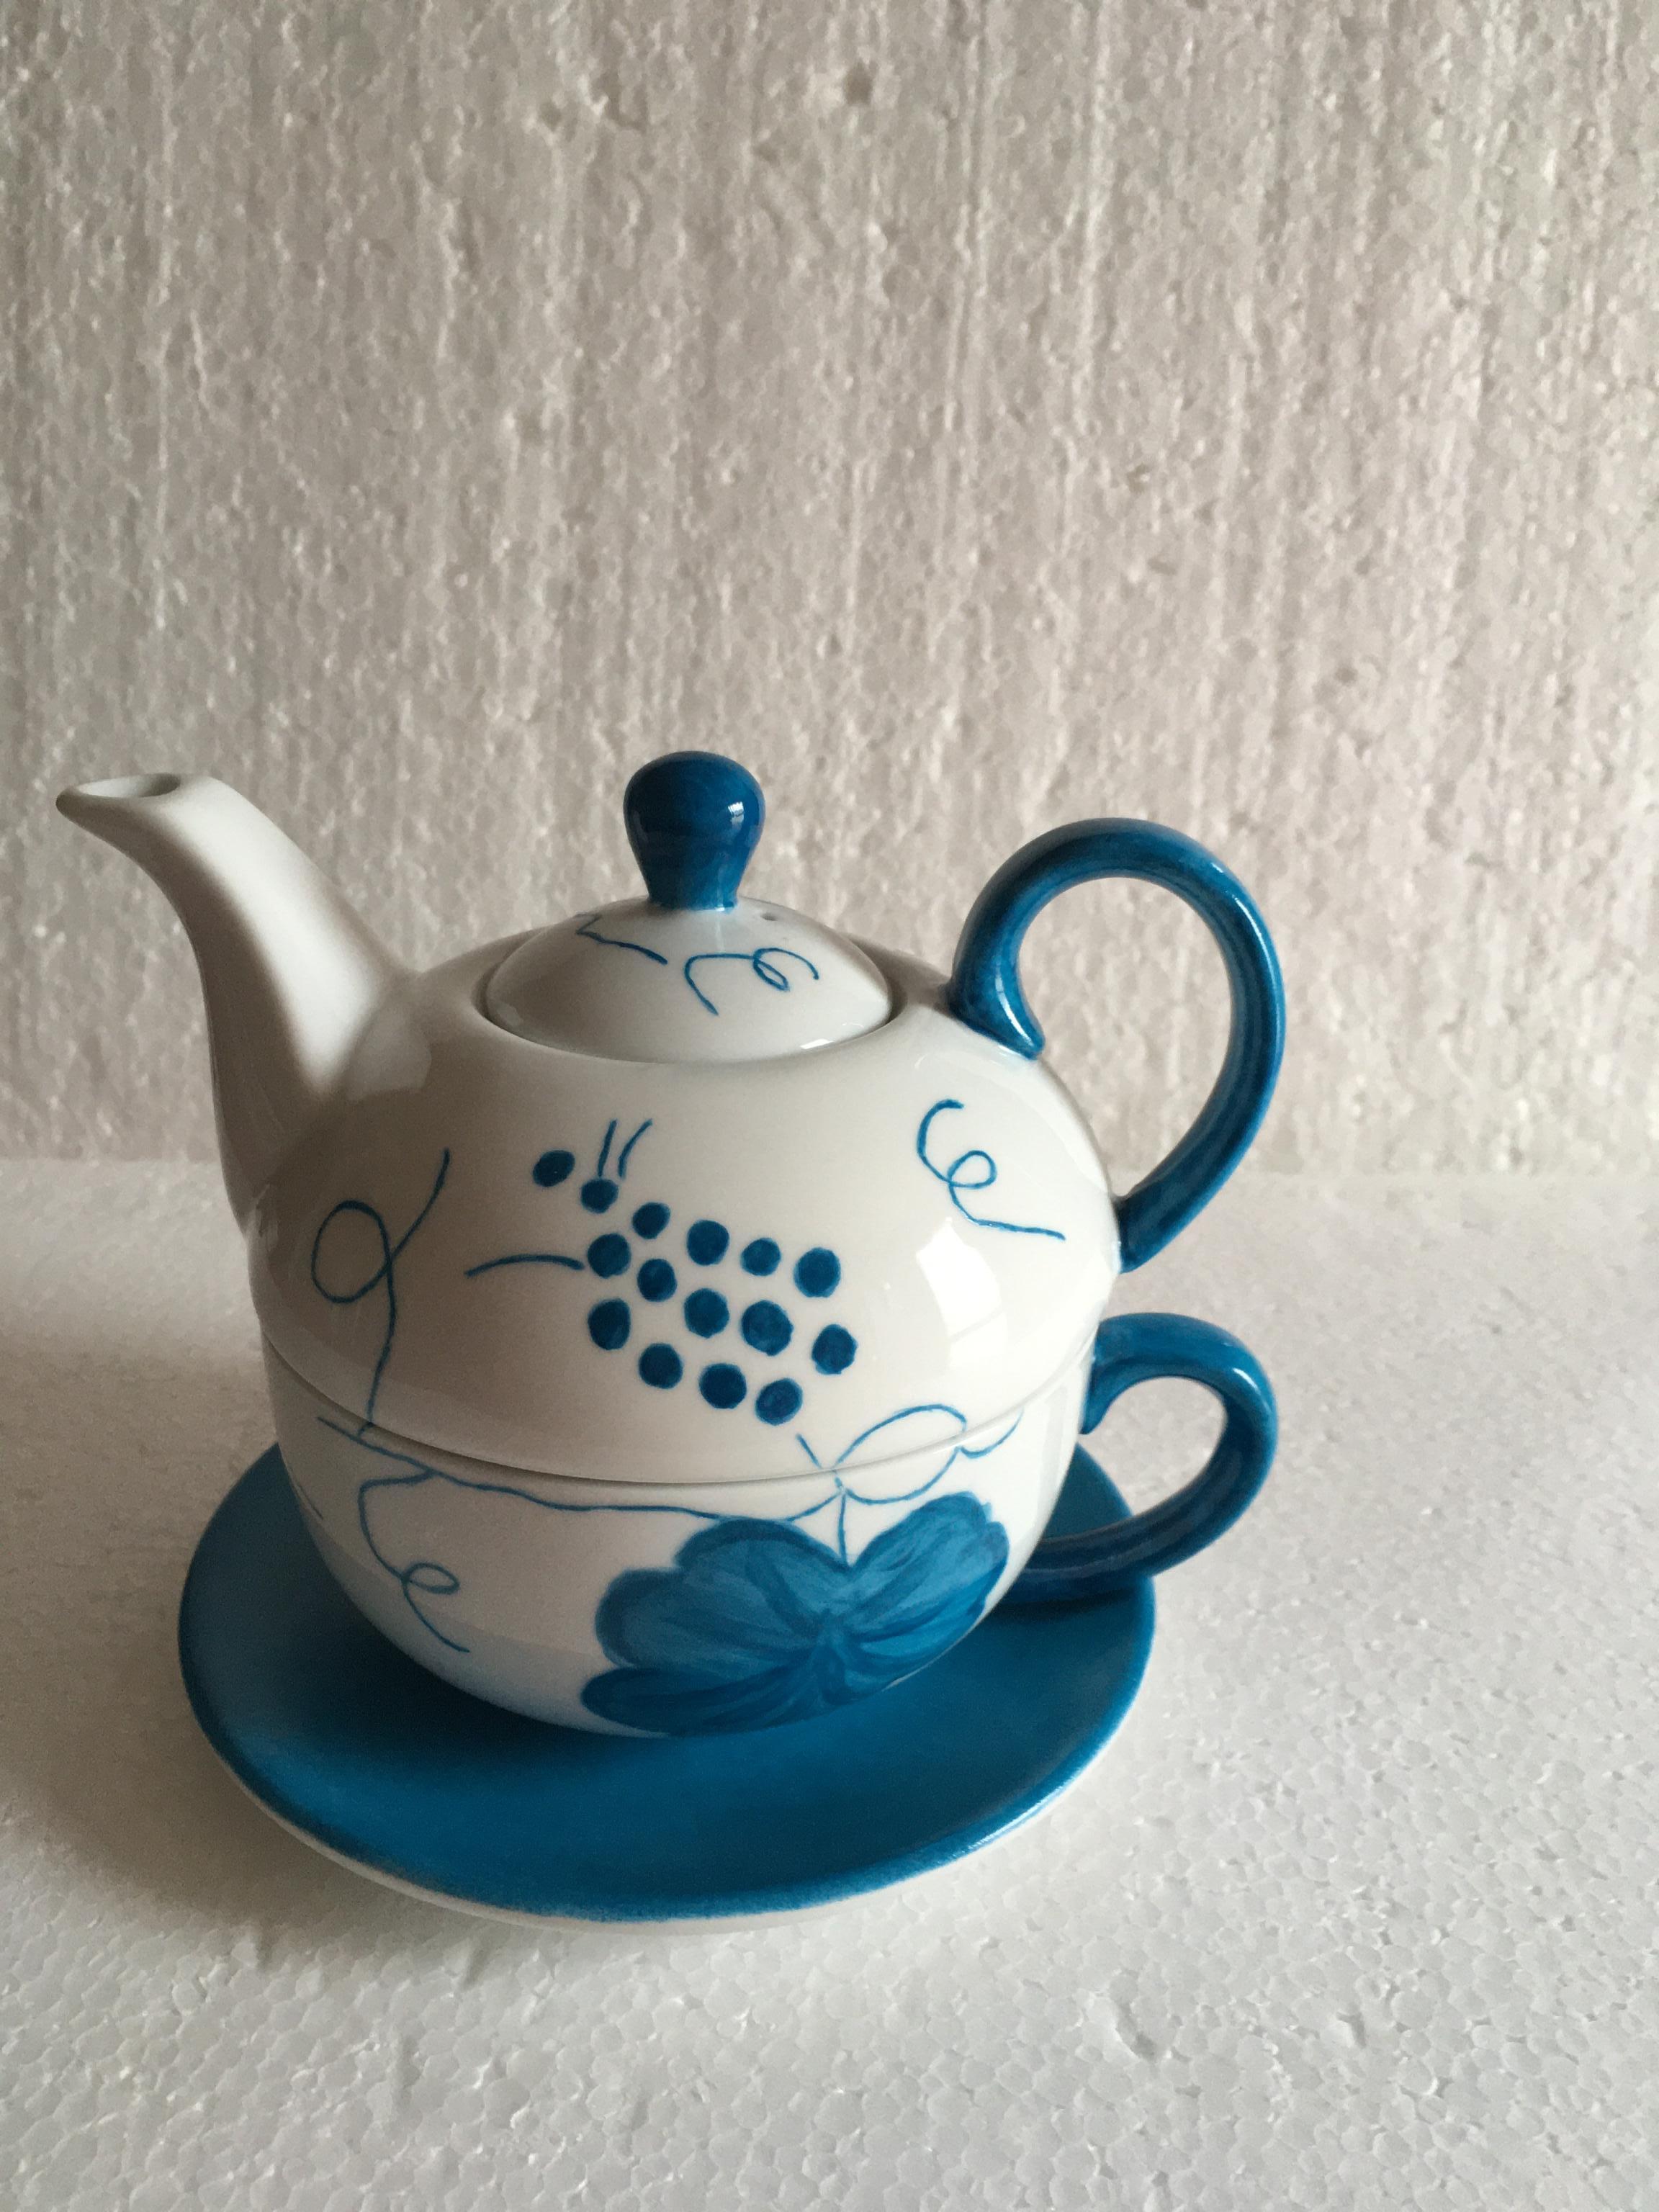 Repose sachet de thé en forme de théière en céramique blanc 10 x